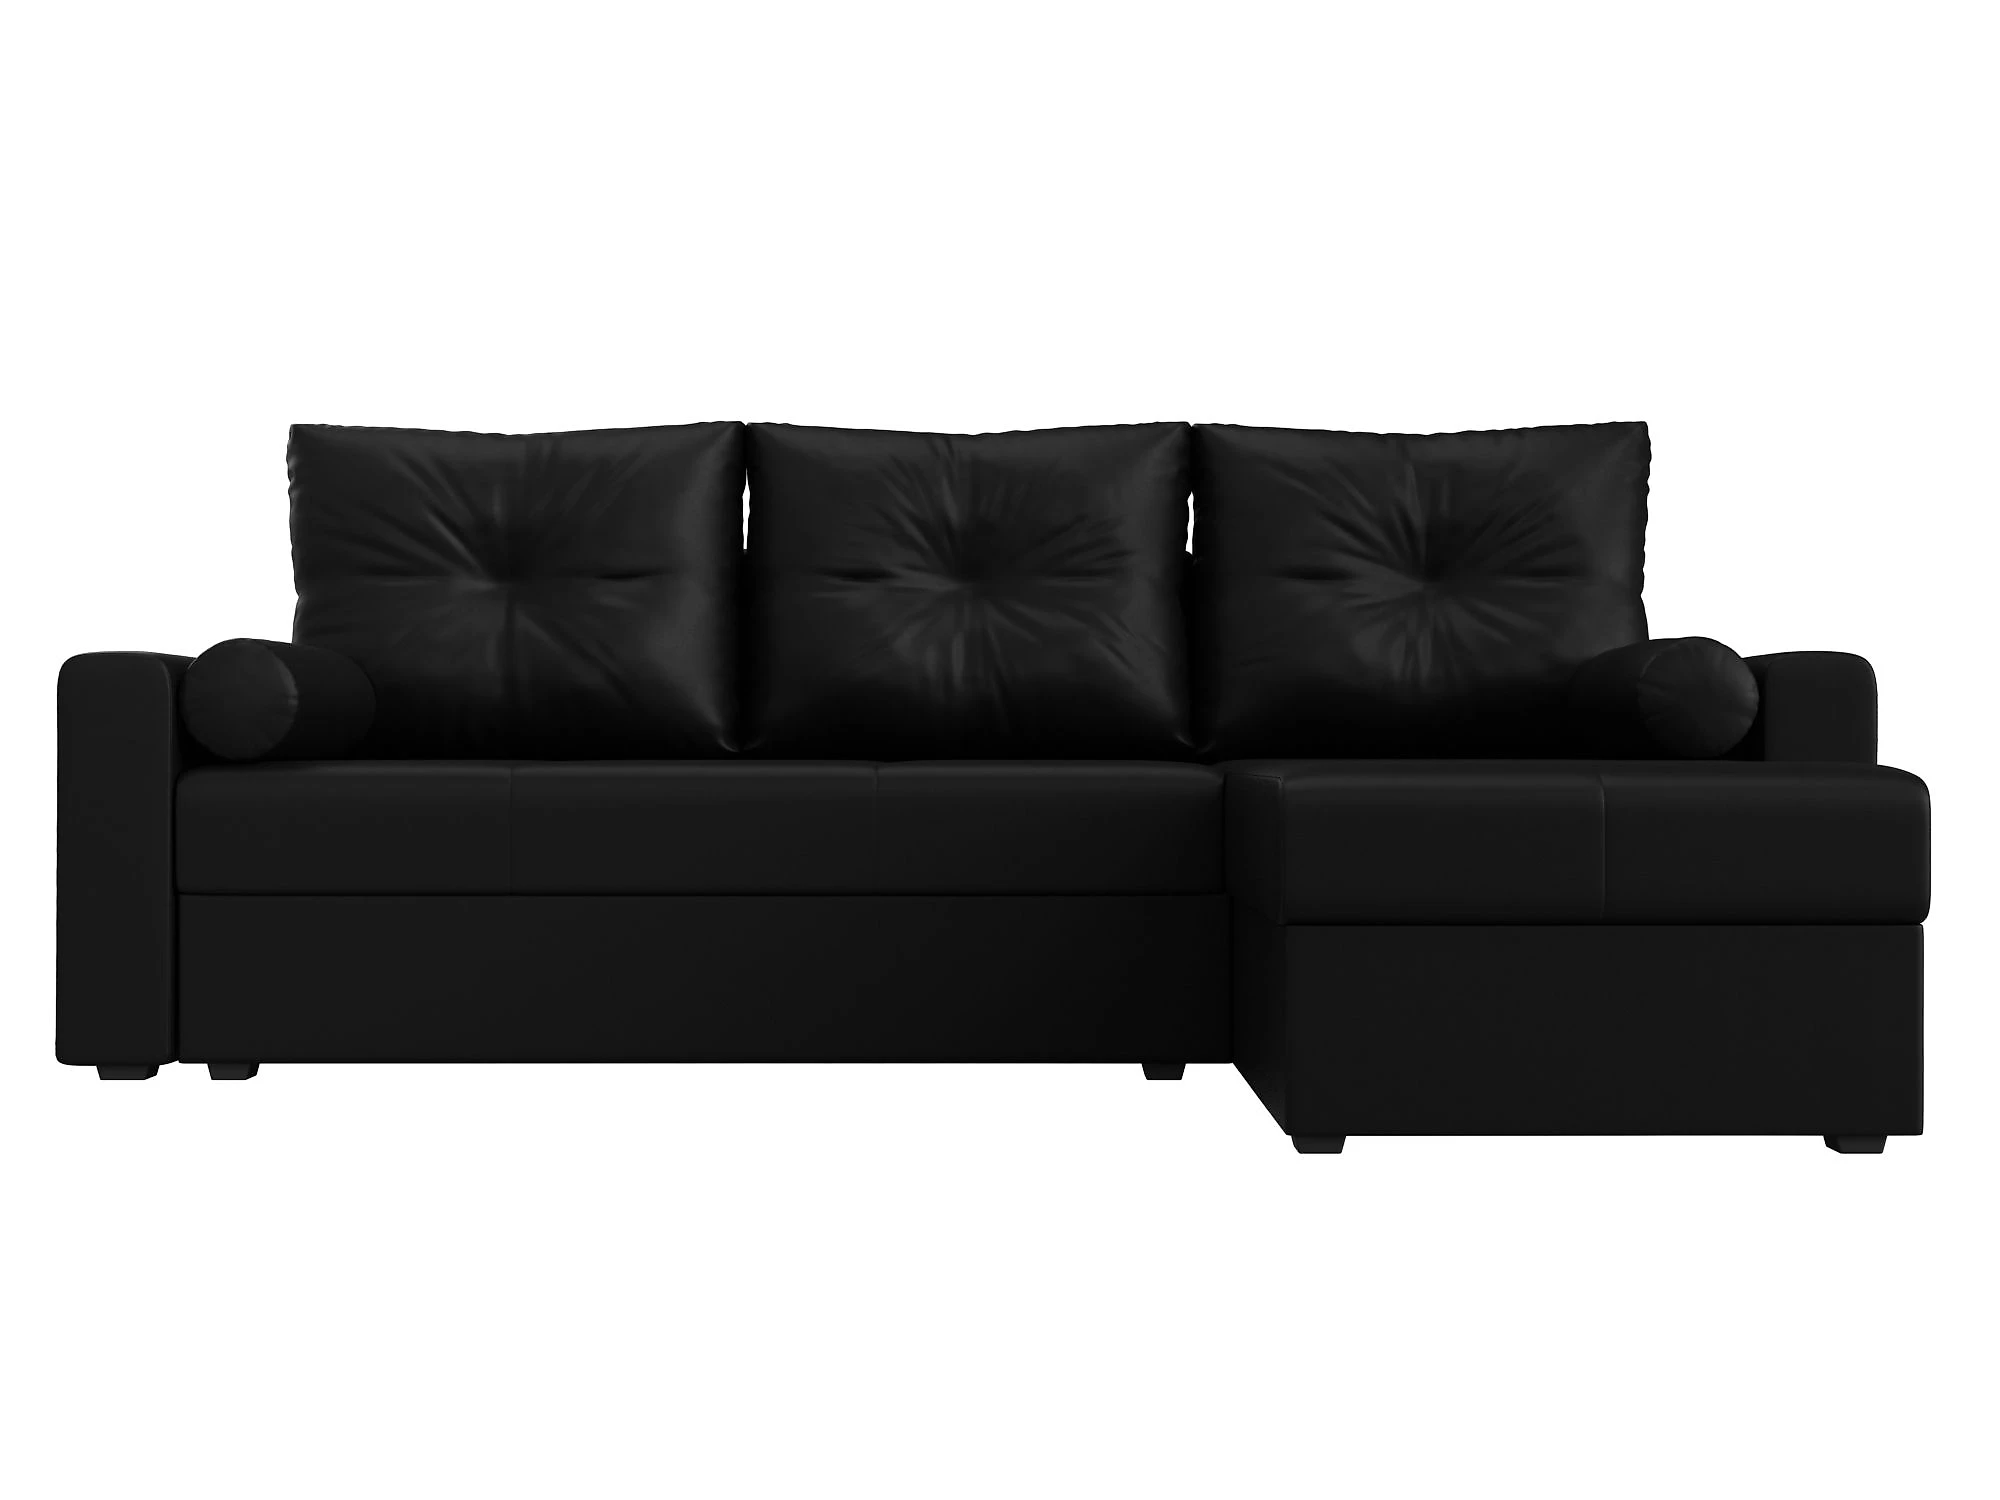  кожаный диван еврокнижка Верона Лайт Дизайн 15